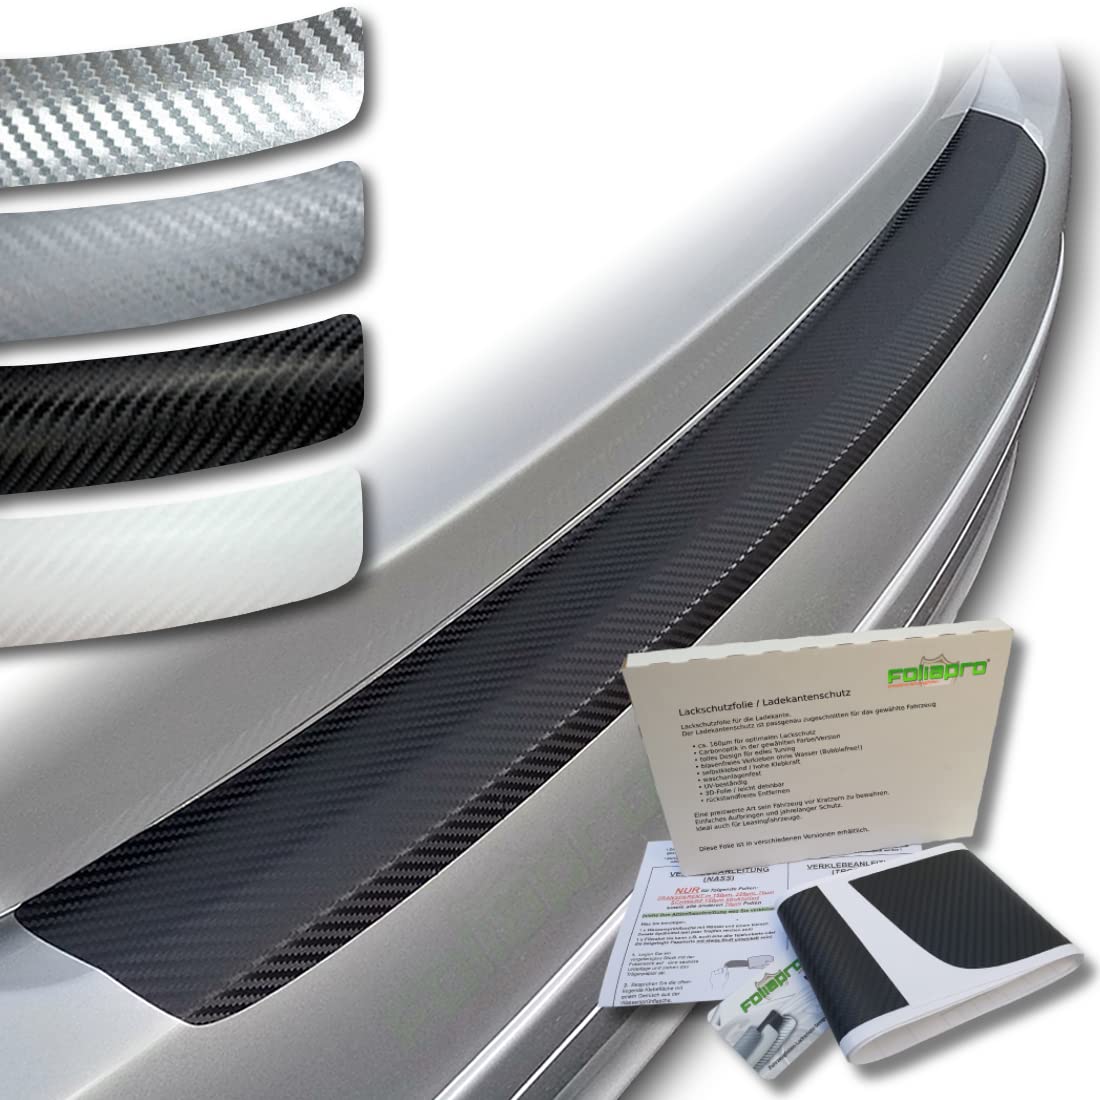 foliapro Lackschutzfolie Ladekantenschutz-Folie Carbonfolie Carbon - Fahrzeug und Foliensorte wählbar - für BMW 5er Touring Kombi G31 ab 2017 bis 2022 - Carbon weiß von foliapro